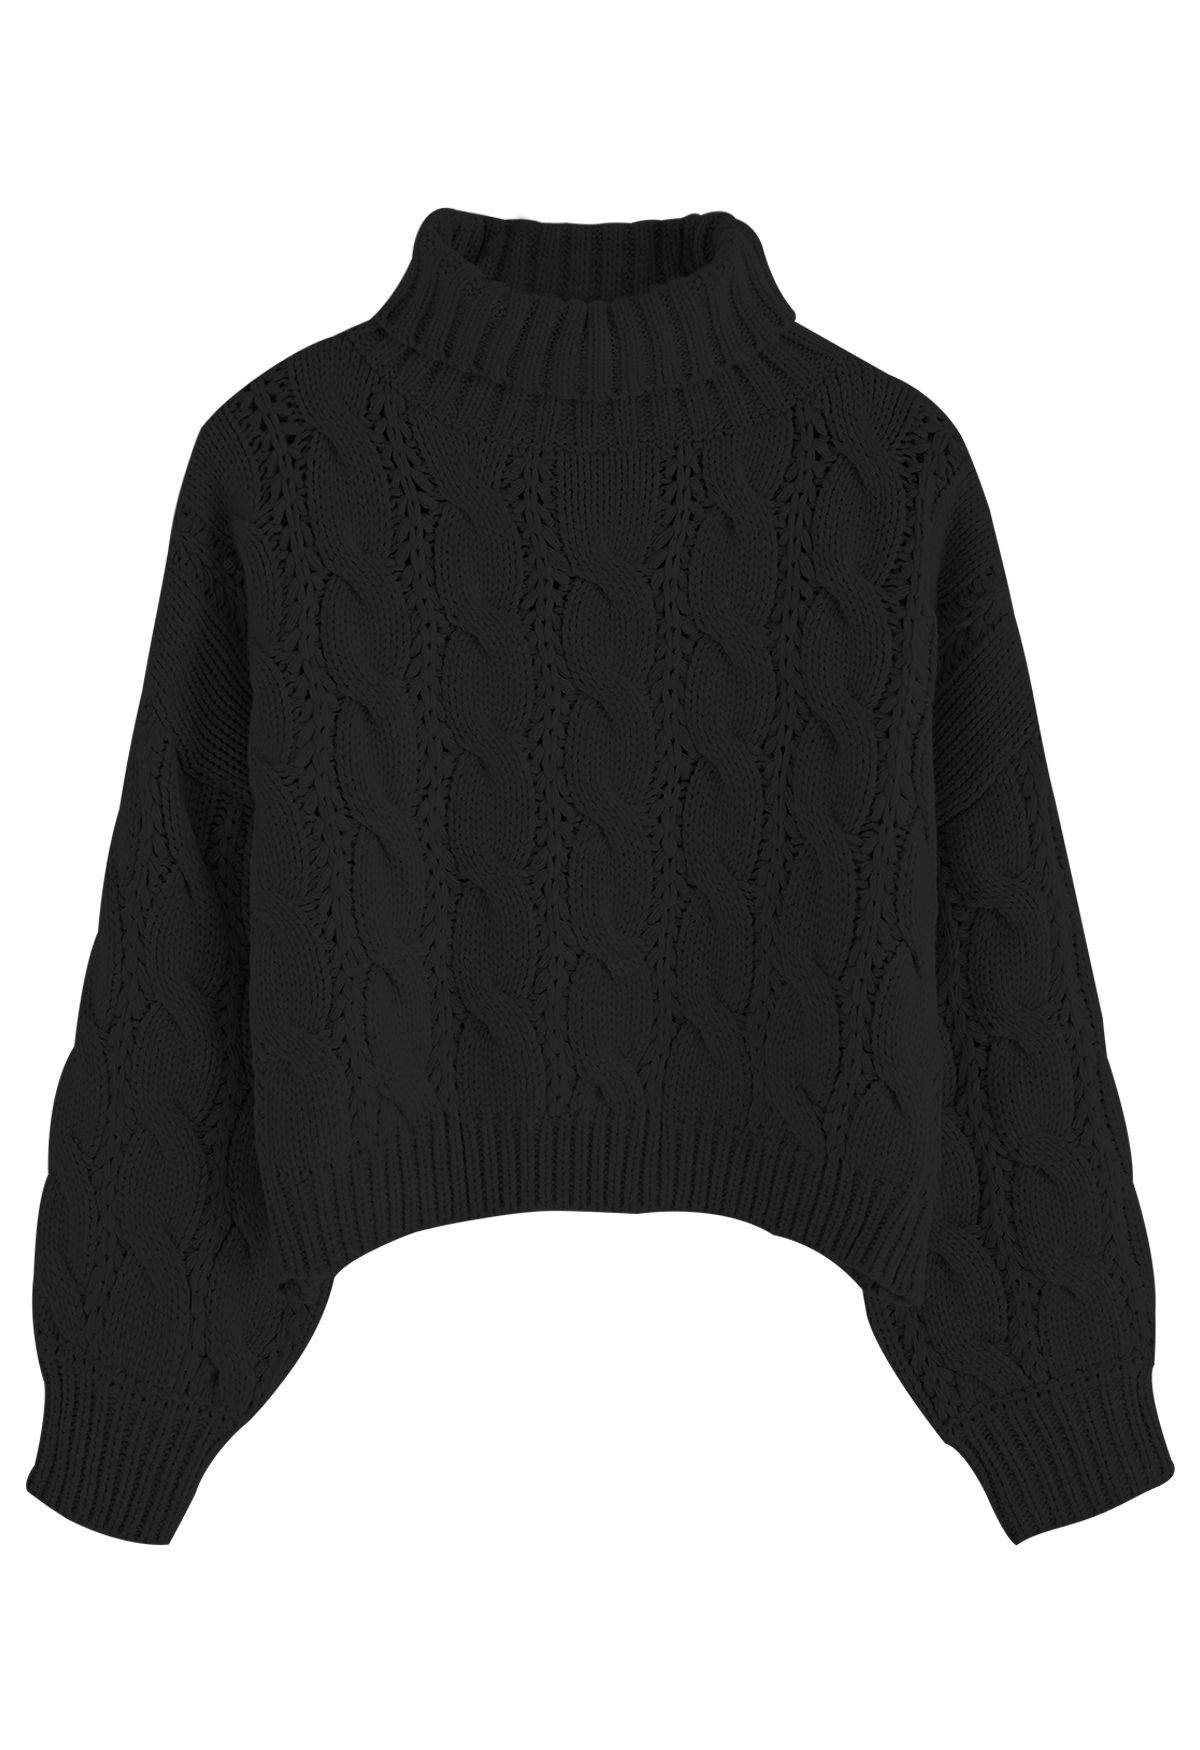 Turtleneck Braid Knit Crop Sweater in Black | Chicwish